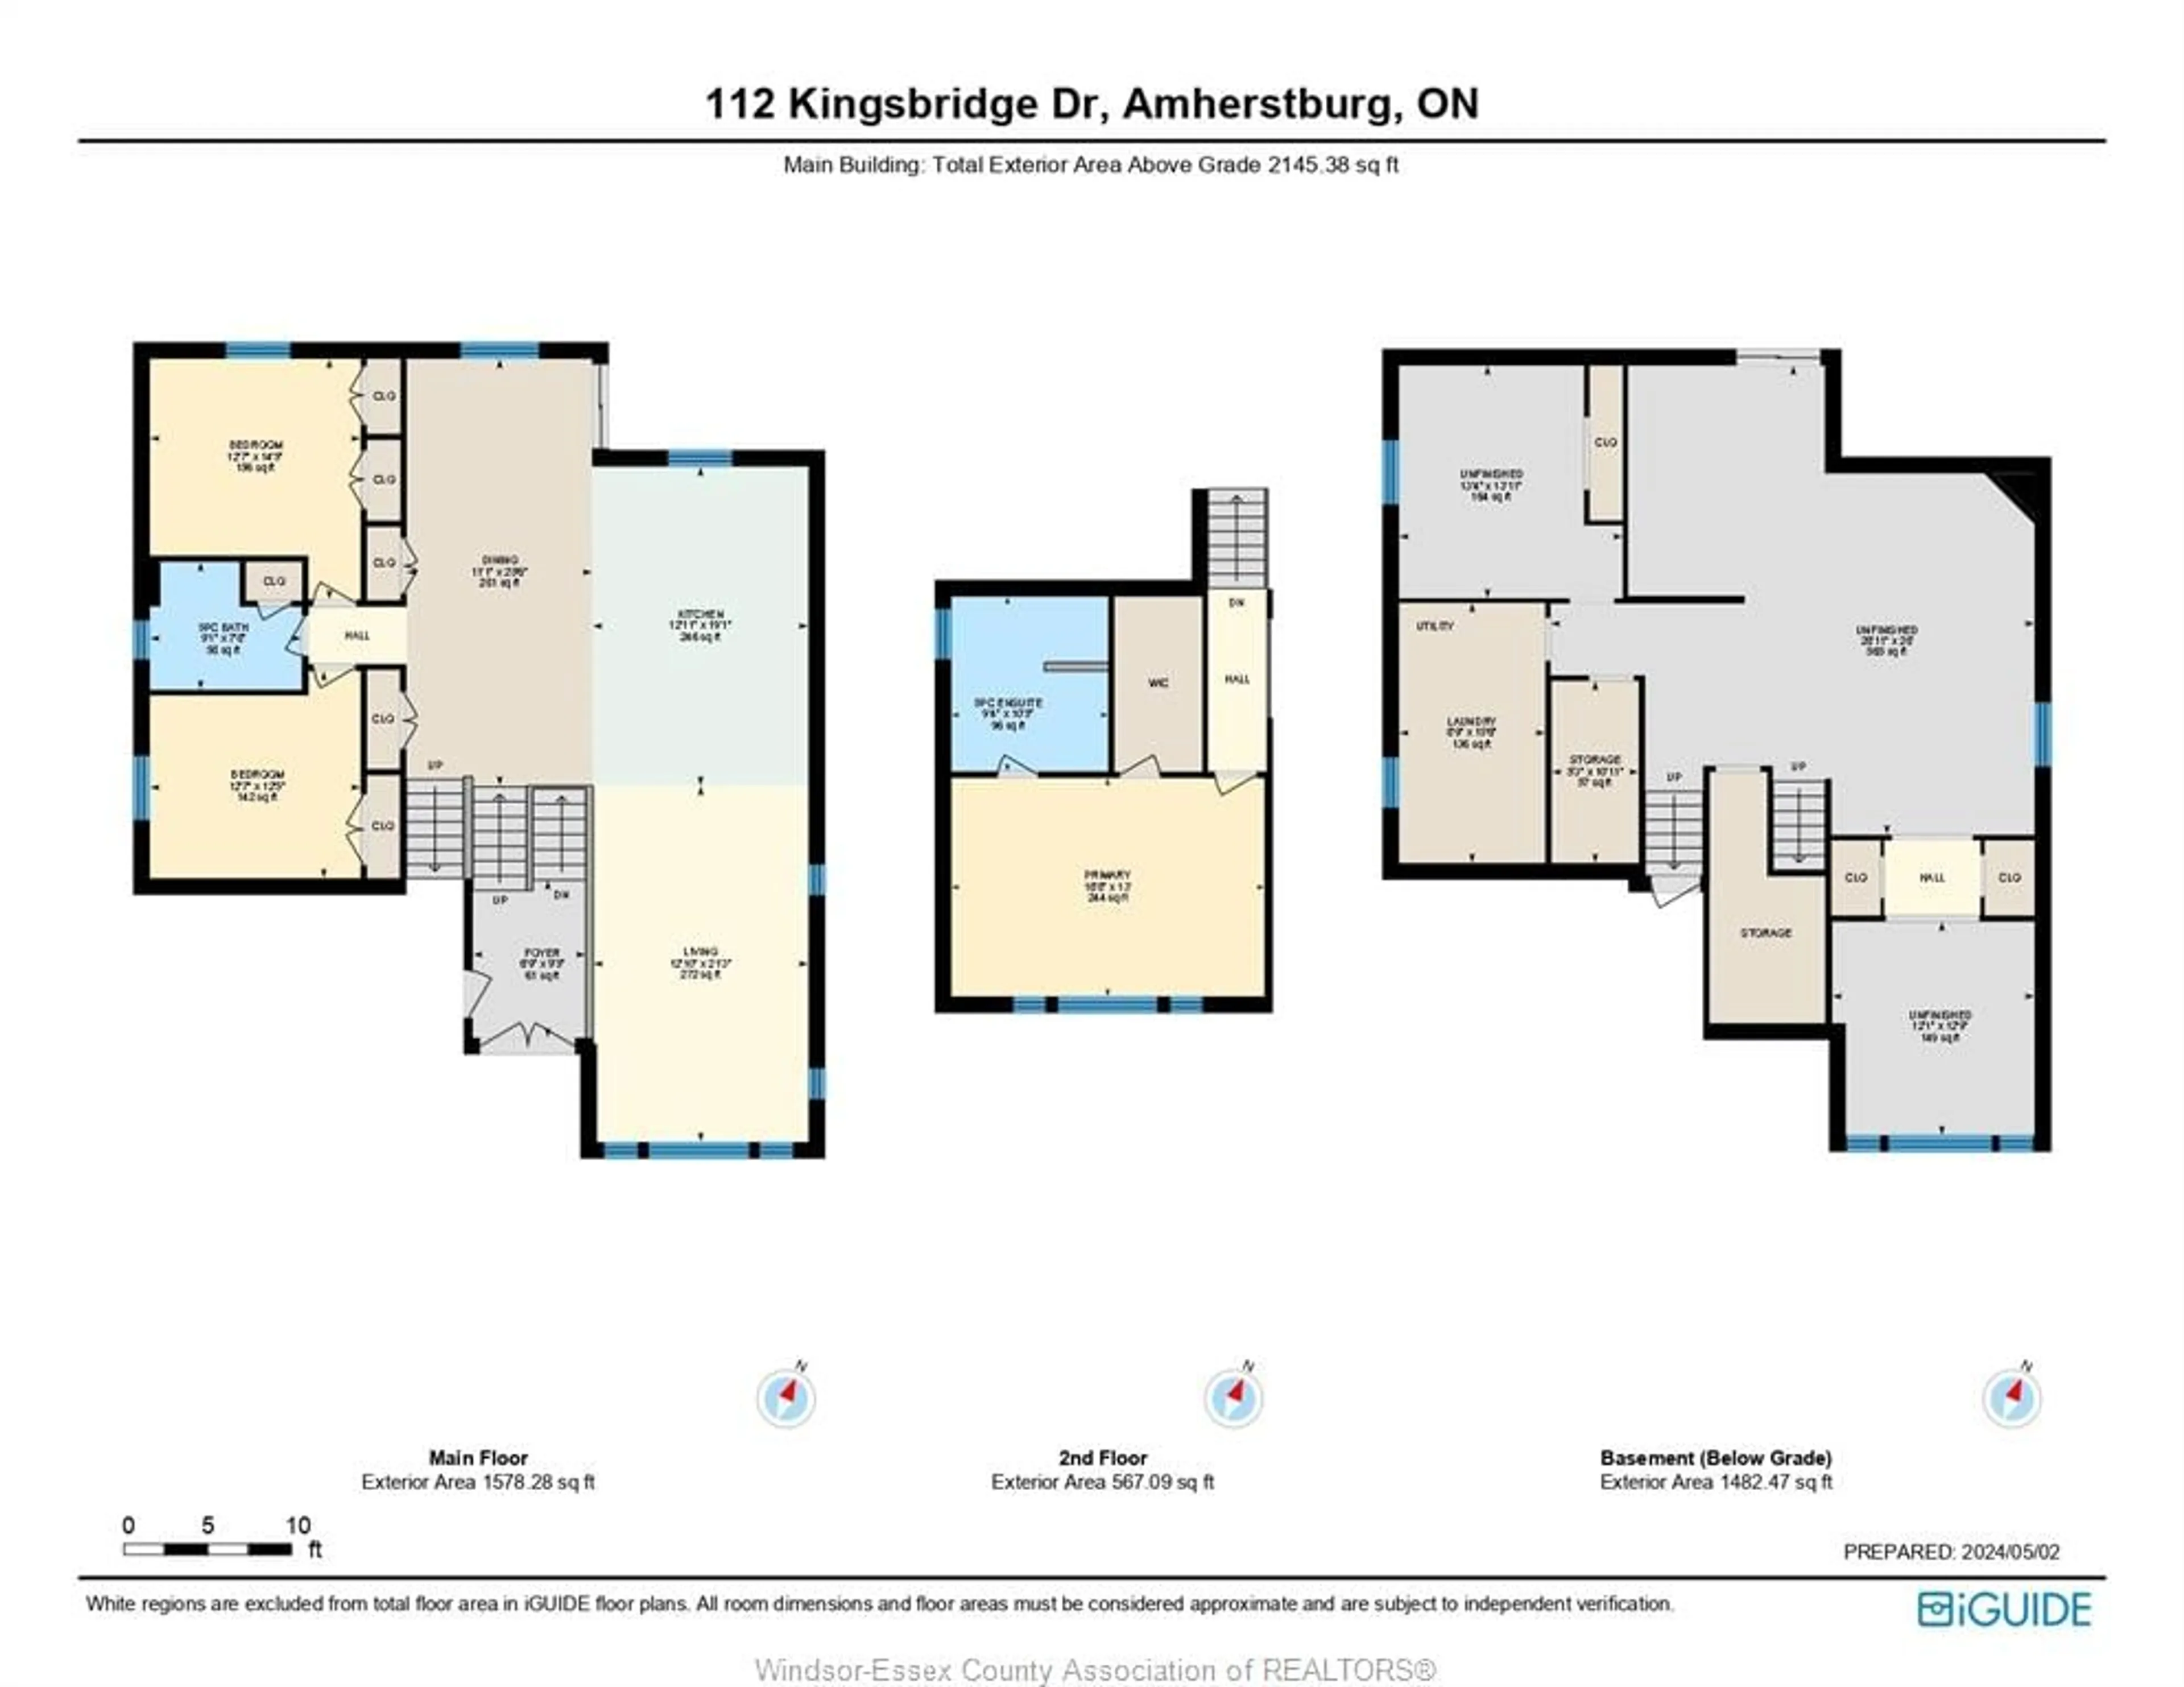 Floor plan for 112 Kingsbridge Dr., Amherstburg Ontario N9V 4B6